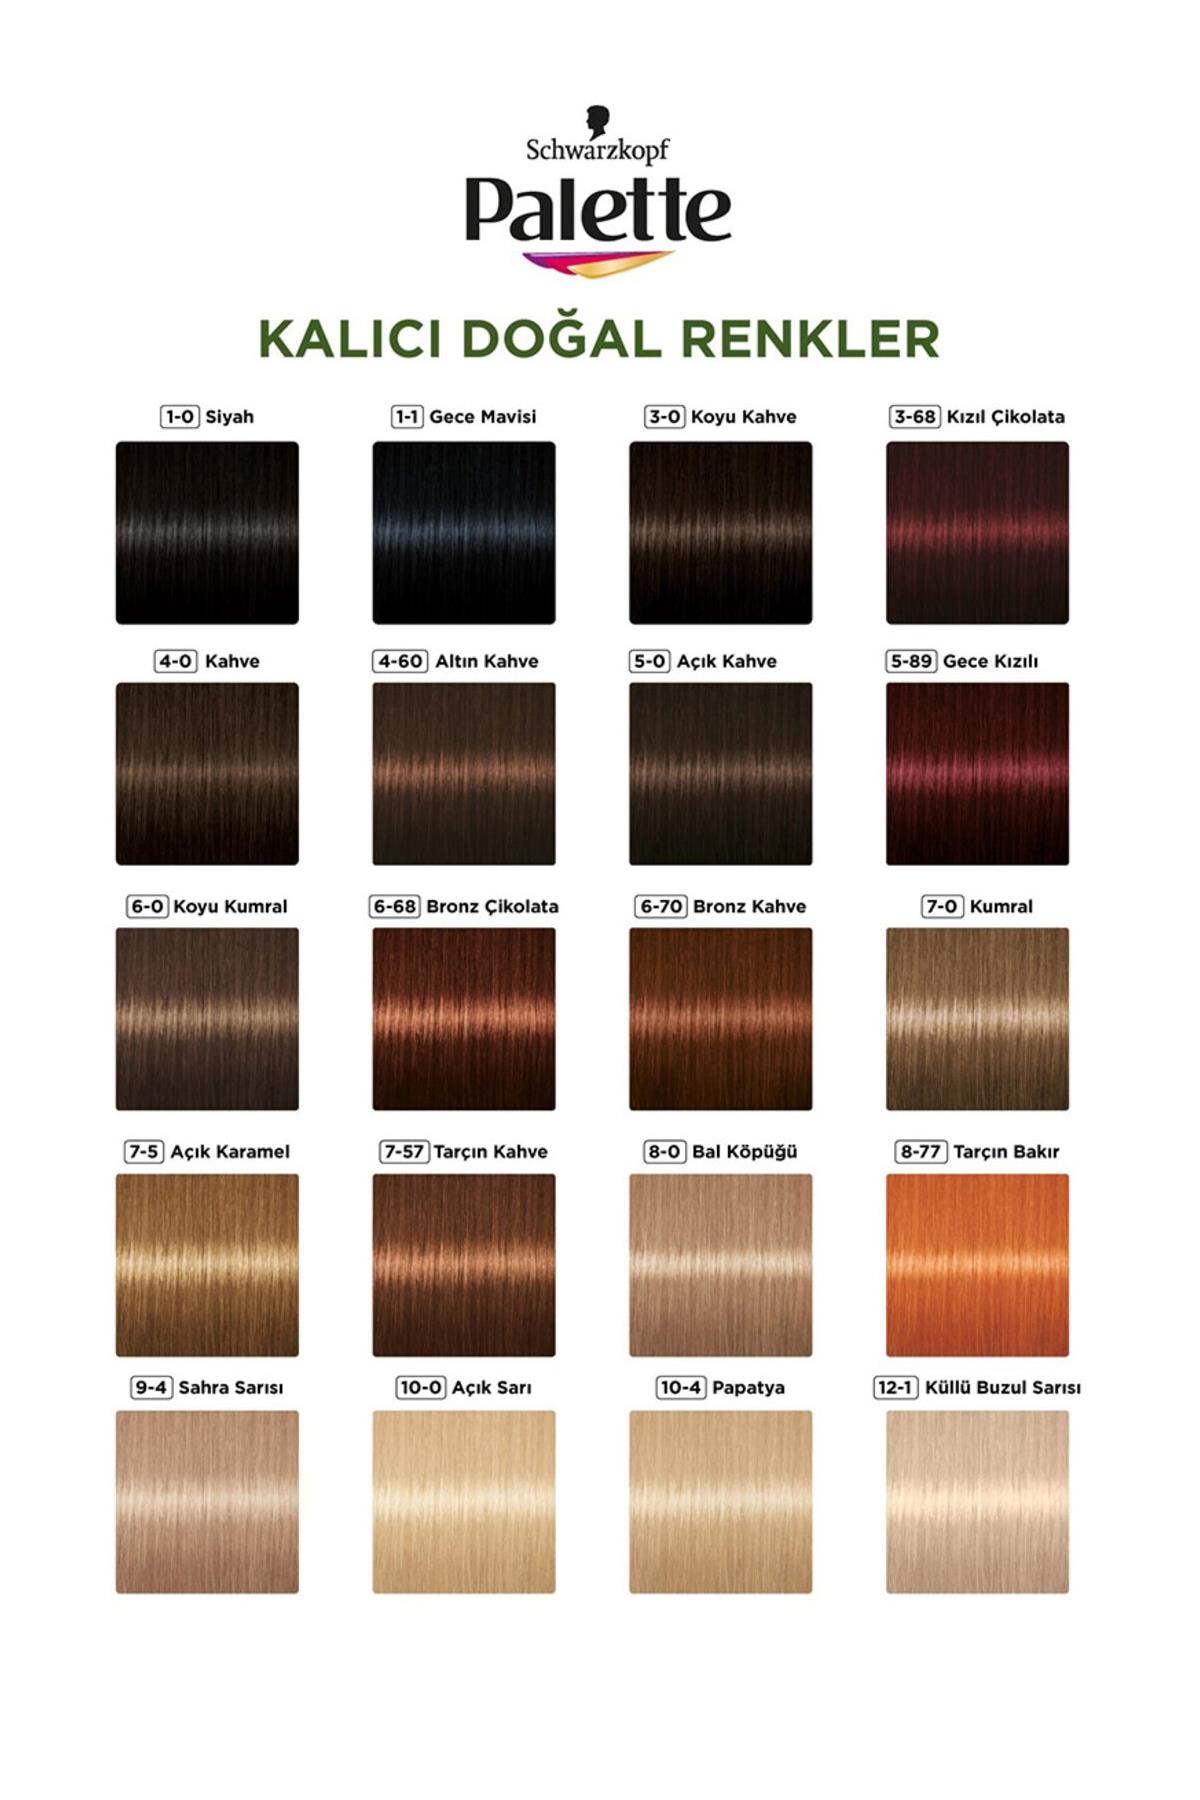 palette-kalici-dogal-renkler-sac-boyasi-no-7-0-kumral-6487-1.jpg